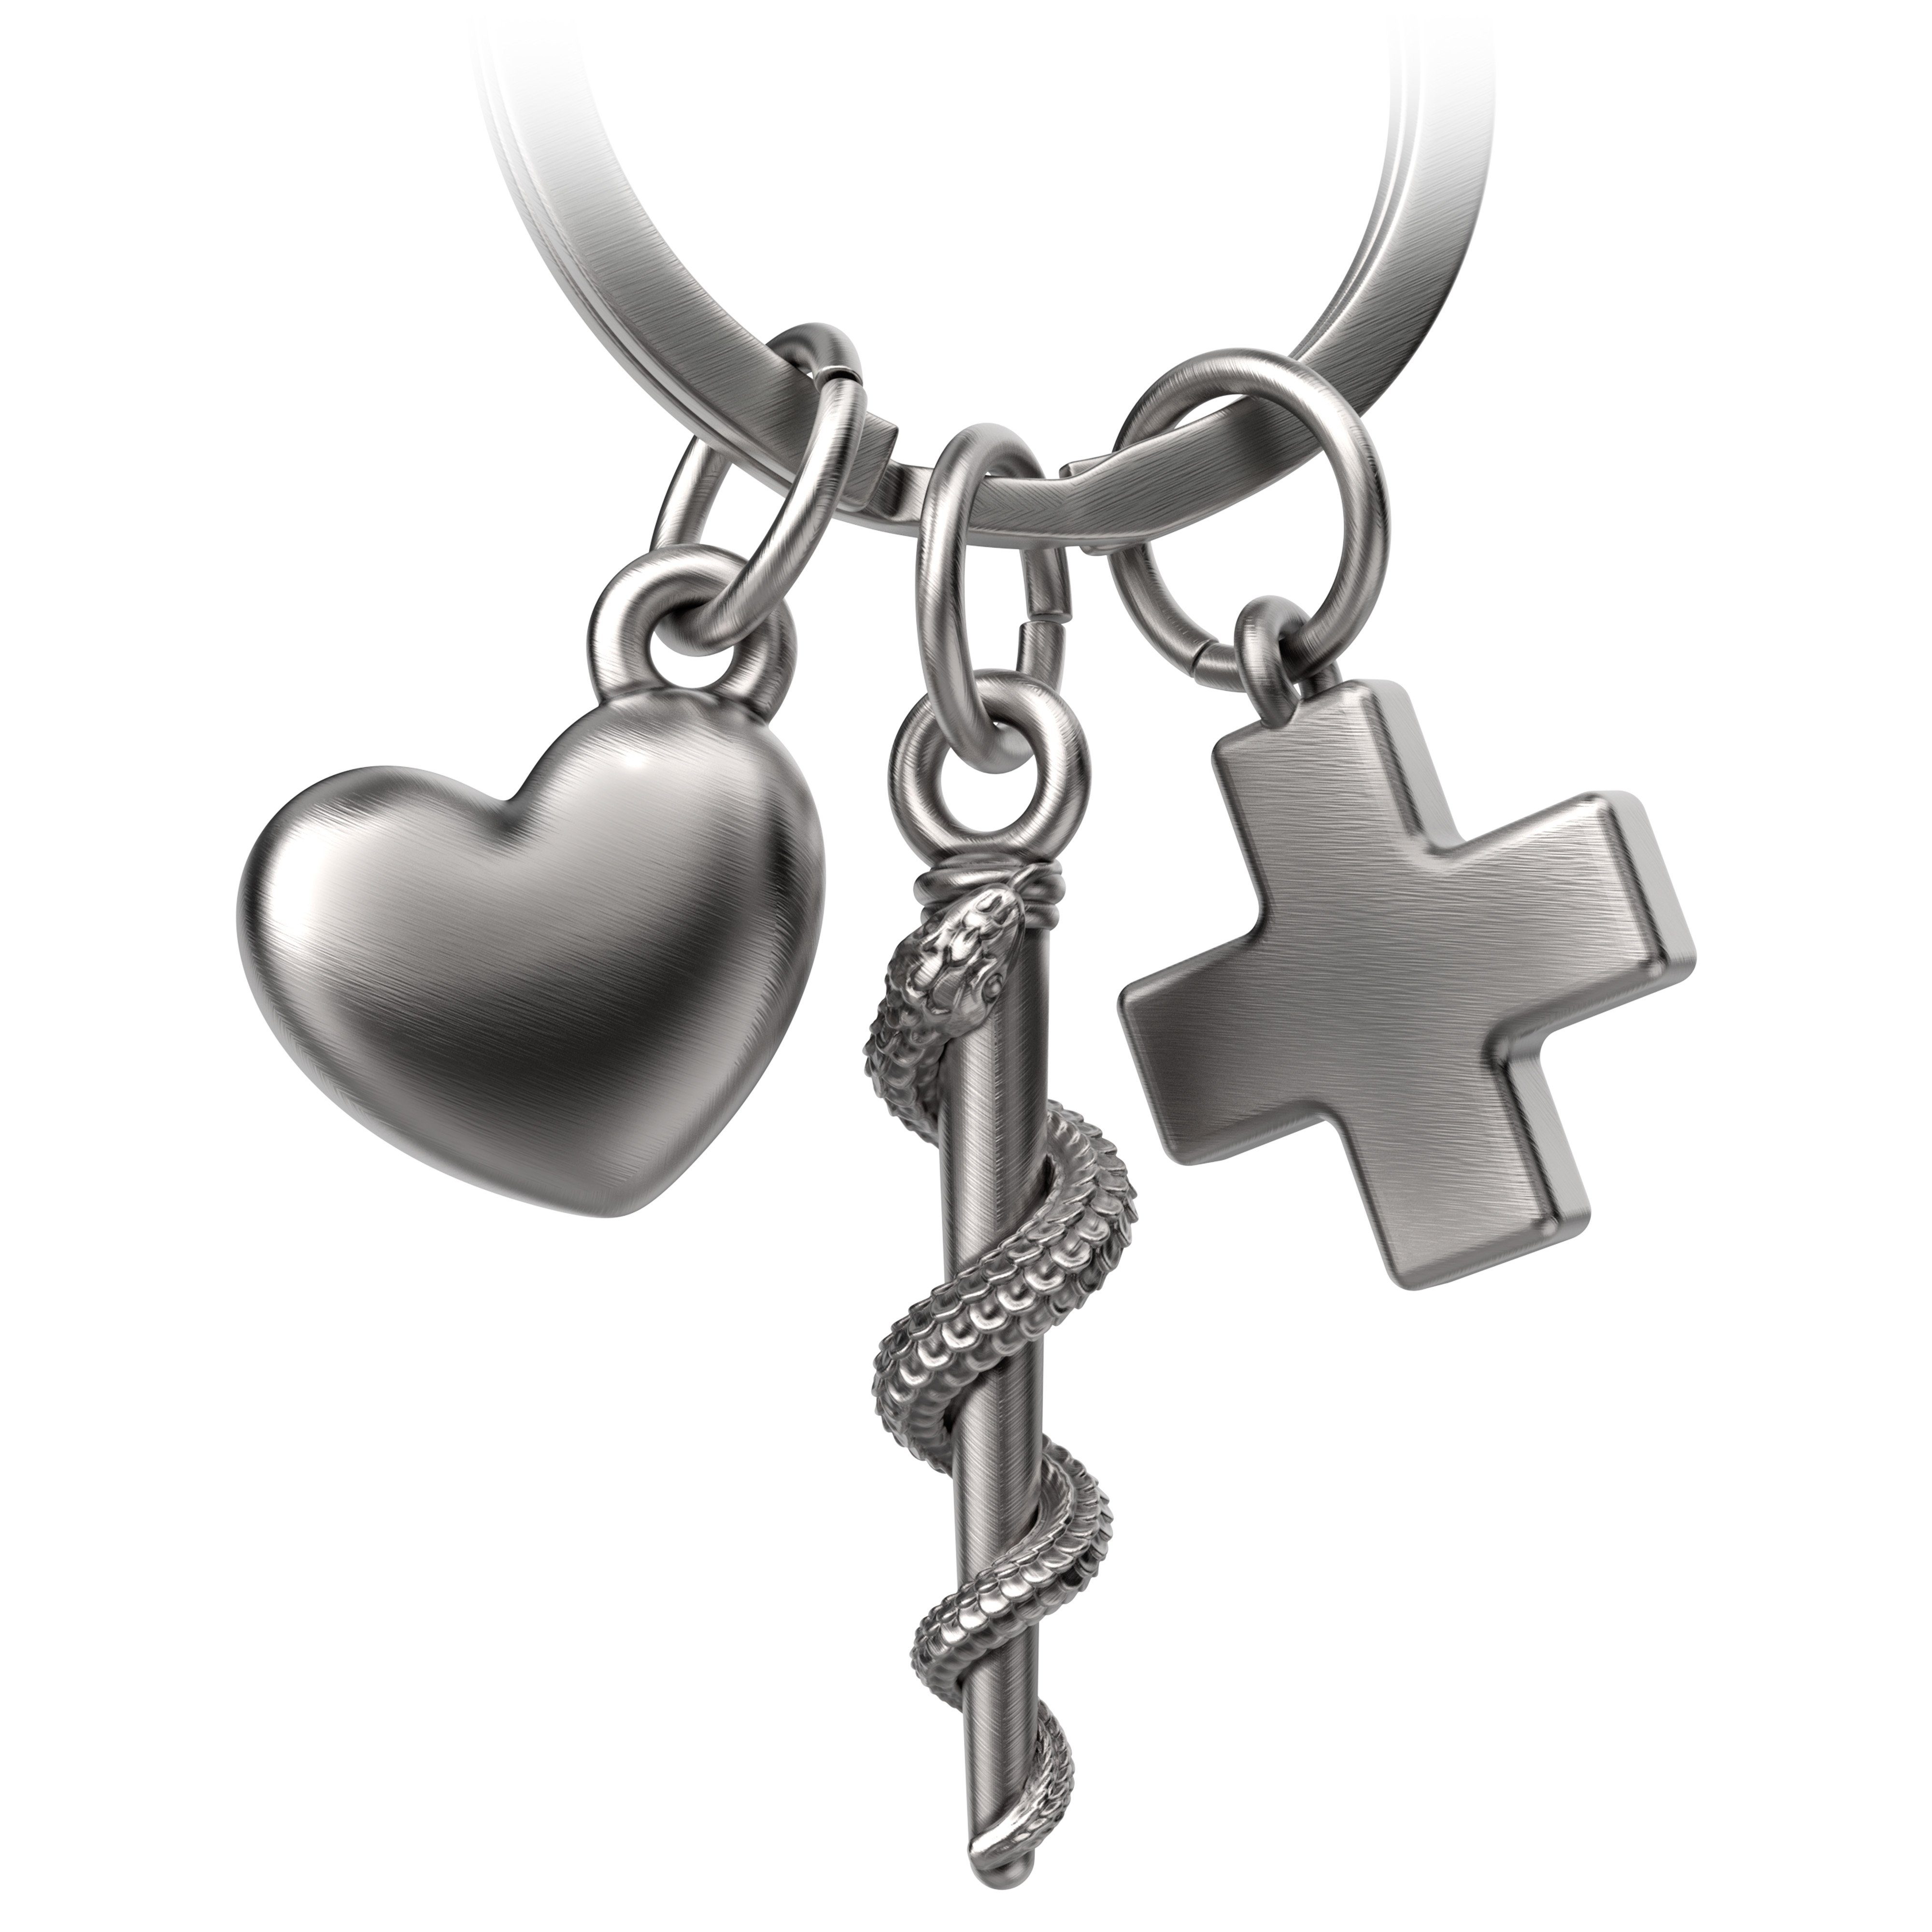 FABACH Schlüsselanhänger Kreuz Schlüsselanhänger Asklepios Äskulapstab Silber Herz mit Antique und